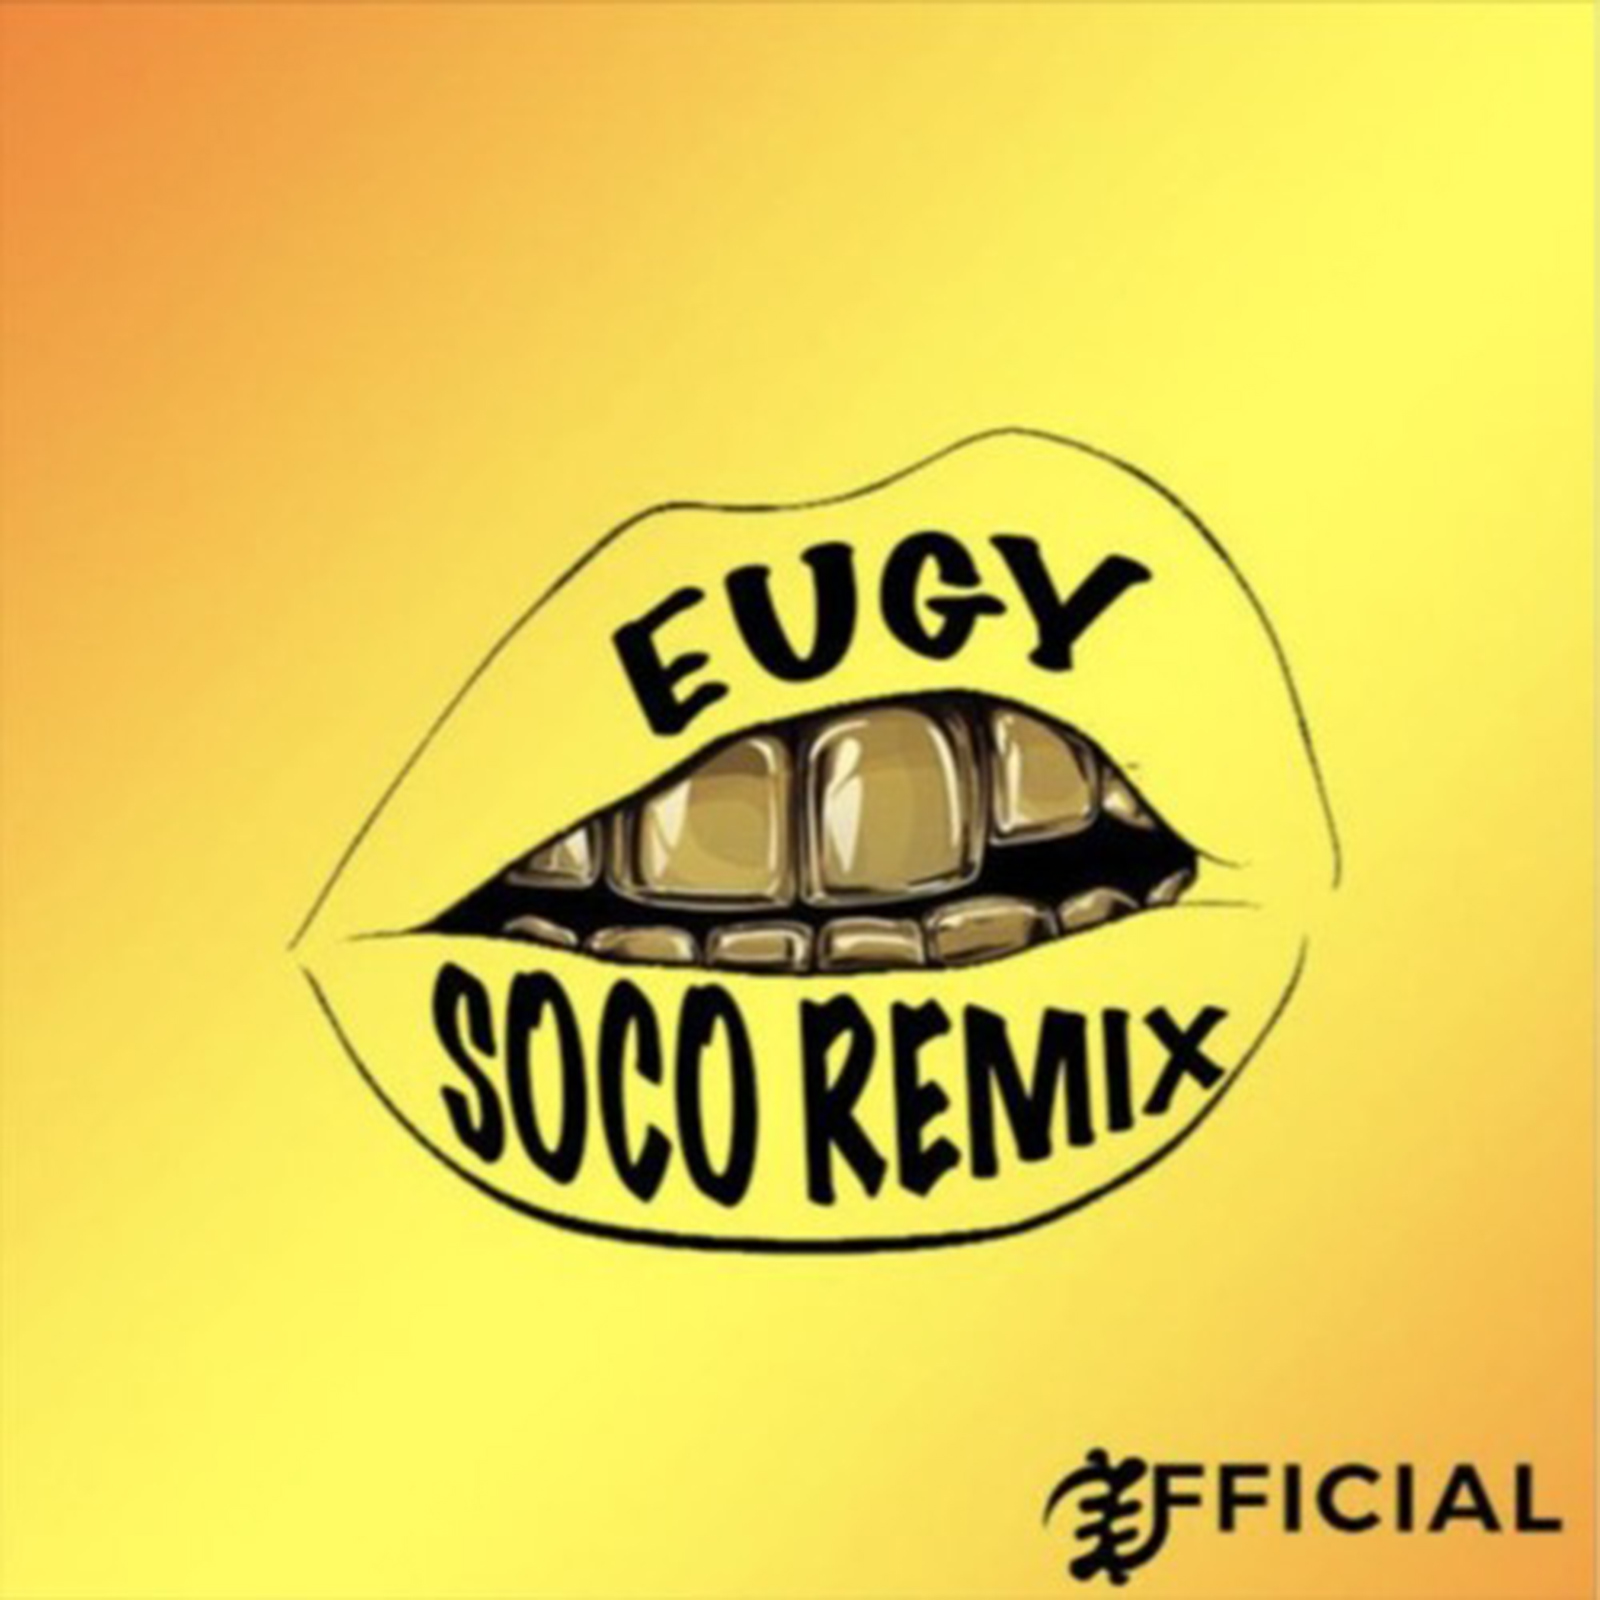 Soco Remix by Eugy & Wizkid